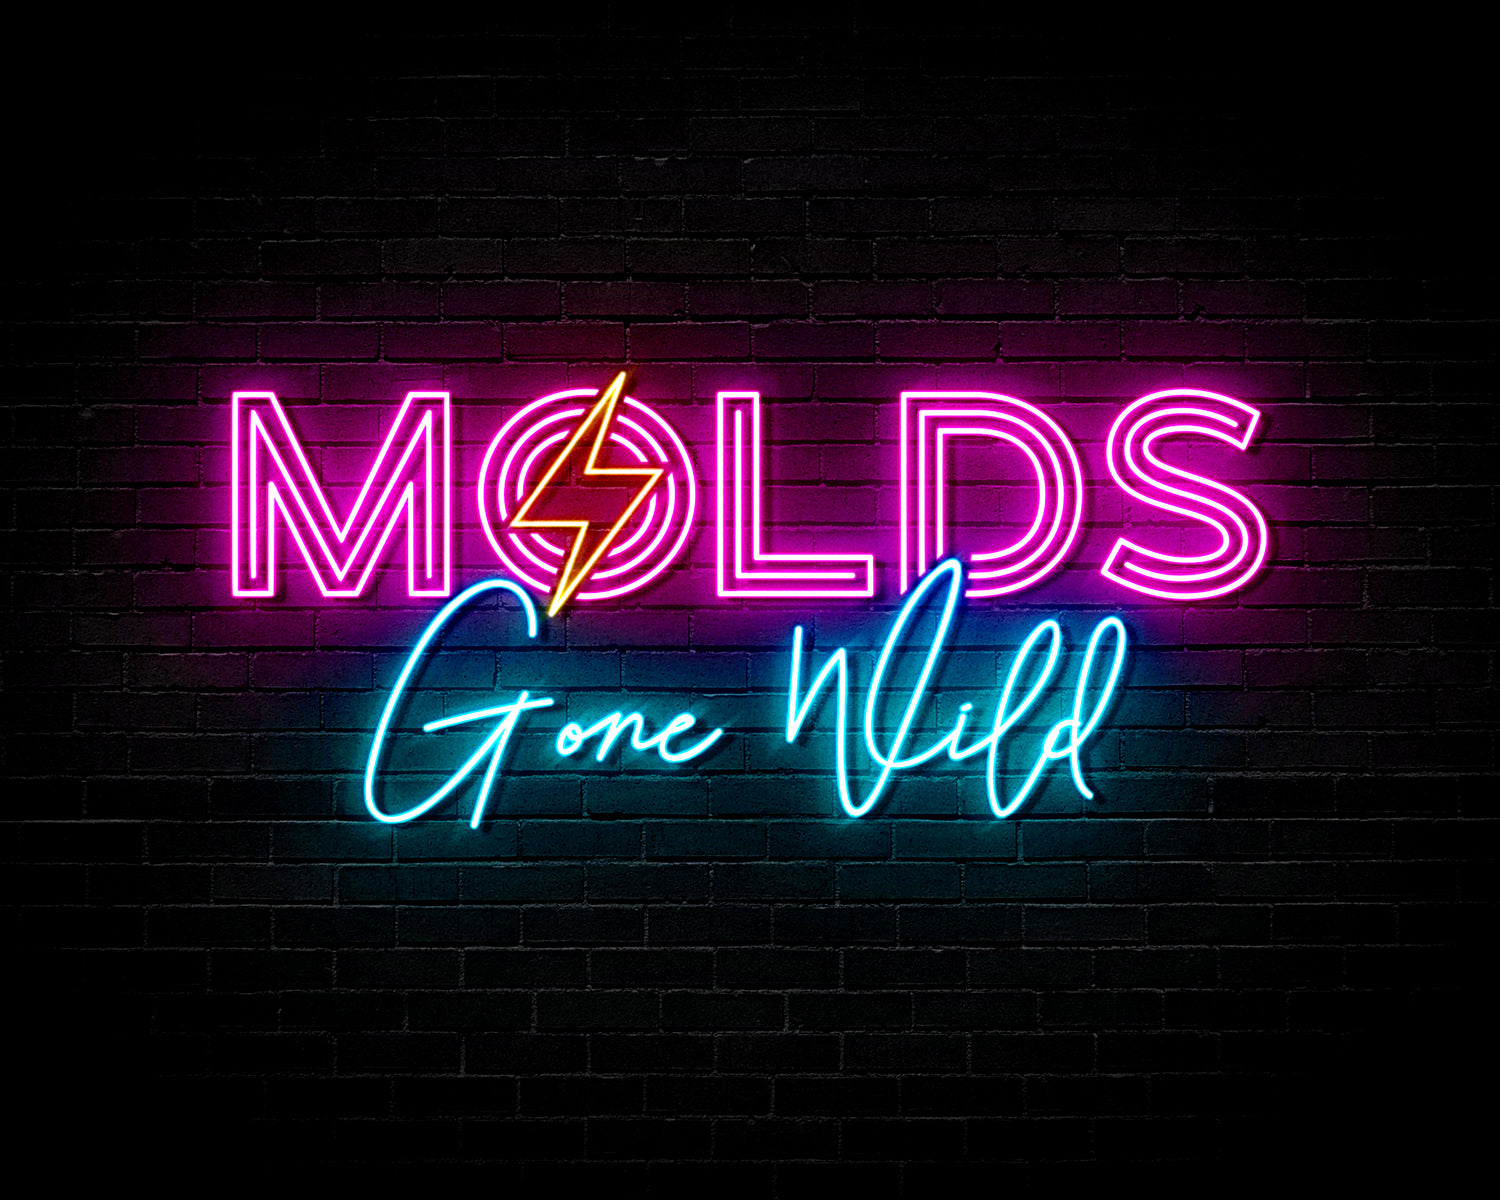 LV Mold – Molds Gone Wild